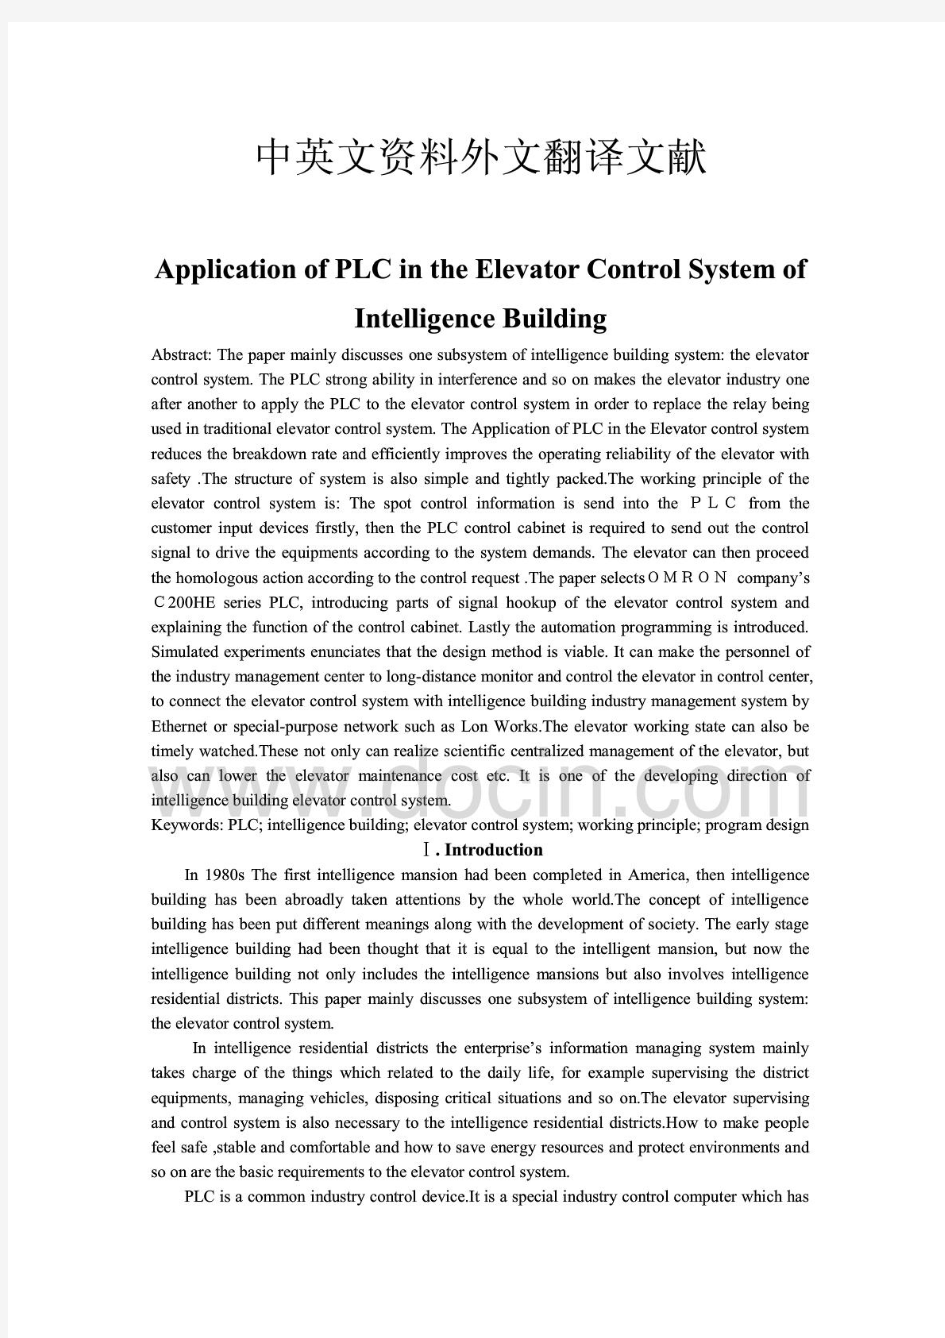 PLC建筑电梯控制系统毕业论文中英文资料外文翻译文献